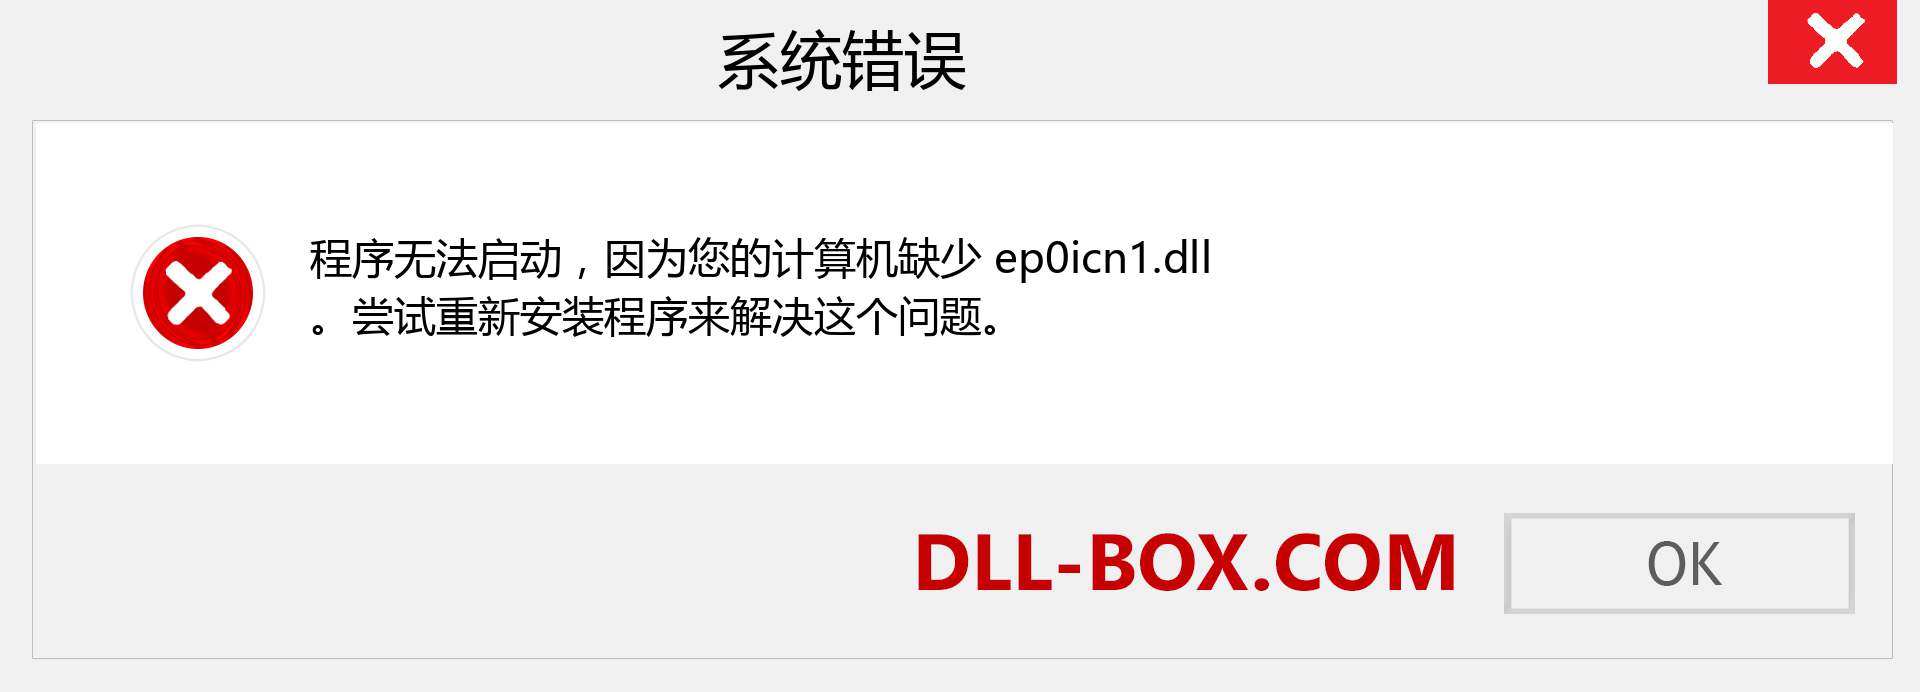 ep0icn1.dll 文件丢失？。 适用于 Windows 7、8、10 的下载 - 修复 Windows、照片、图像上的 ep0icn1 dll 丢失错误